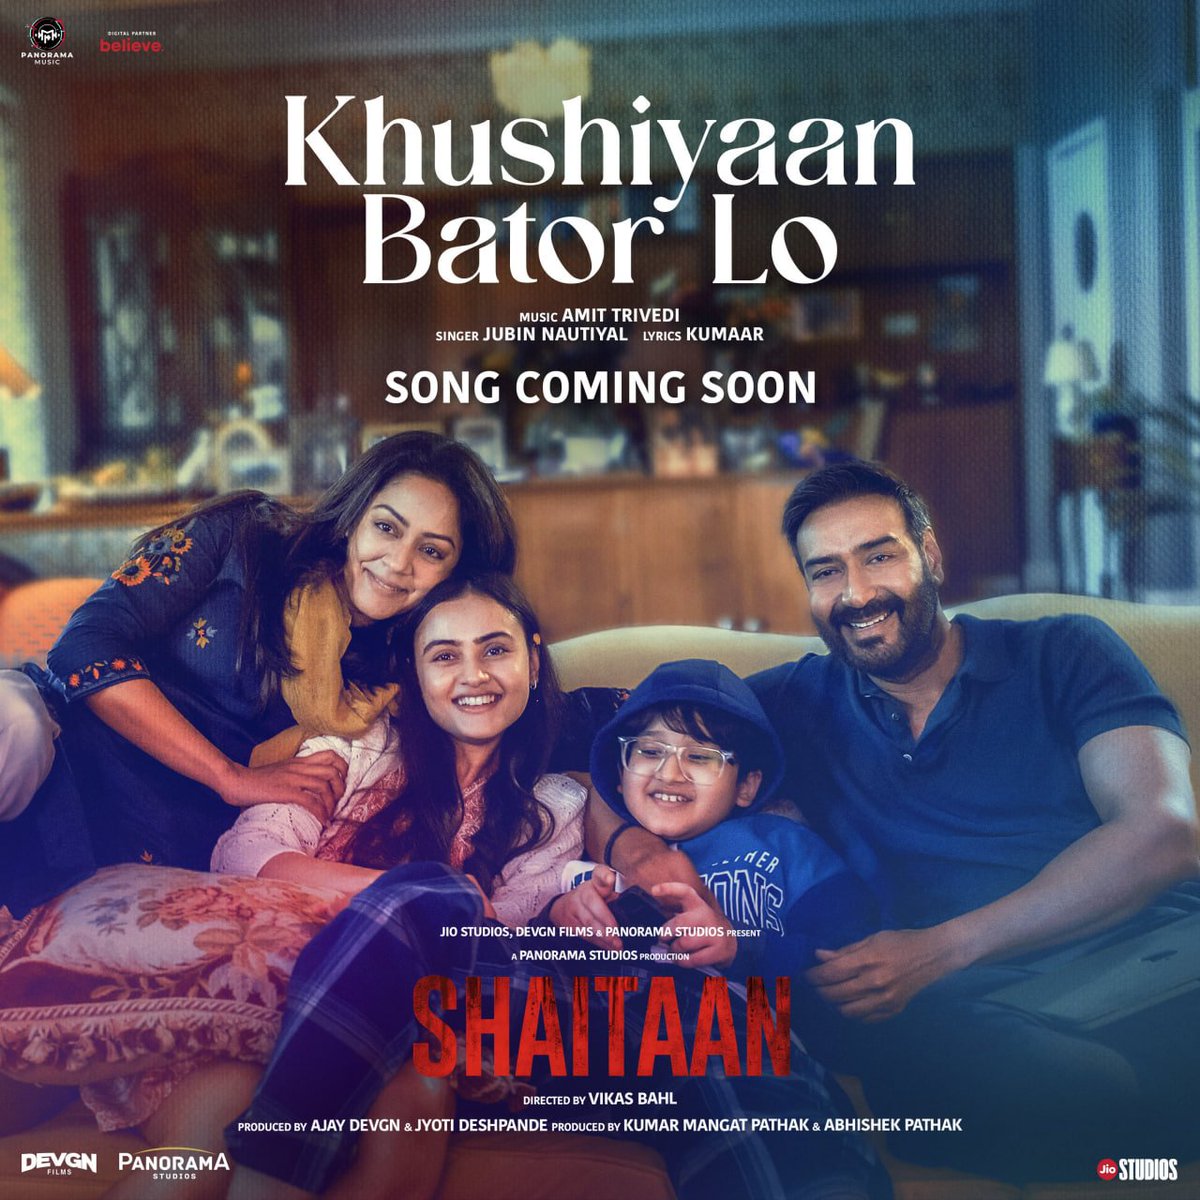 Finally a song is coming soon!
#KhushiyaanBatorLo #Shaitaan 
#AjayDevgn #Jyotika ❤️